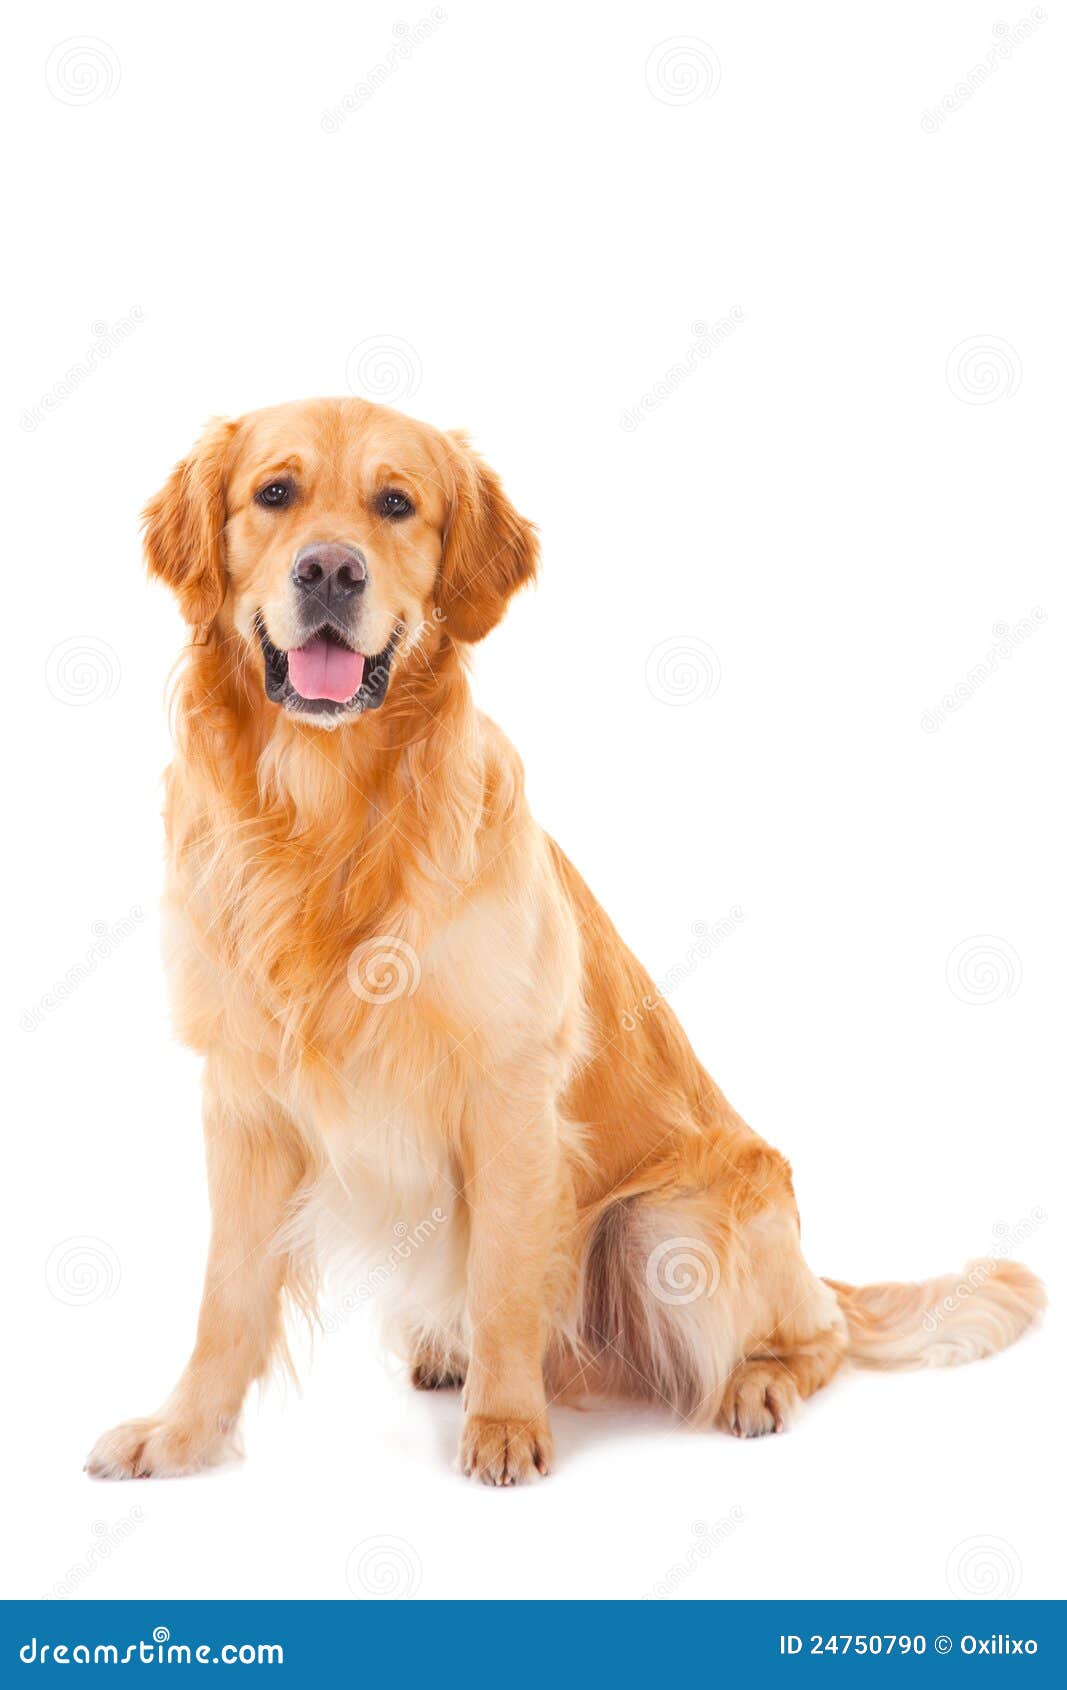 golden retriever dog sitting on white